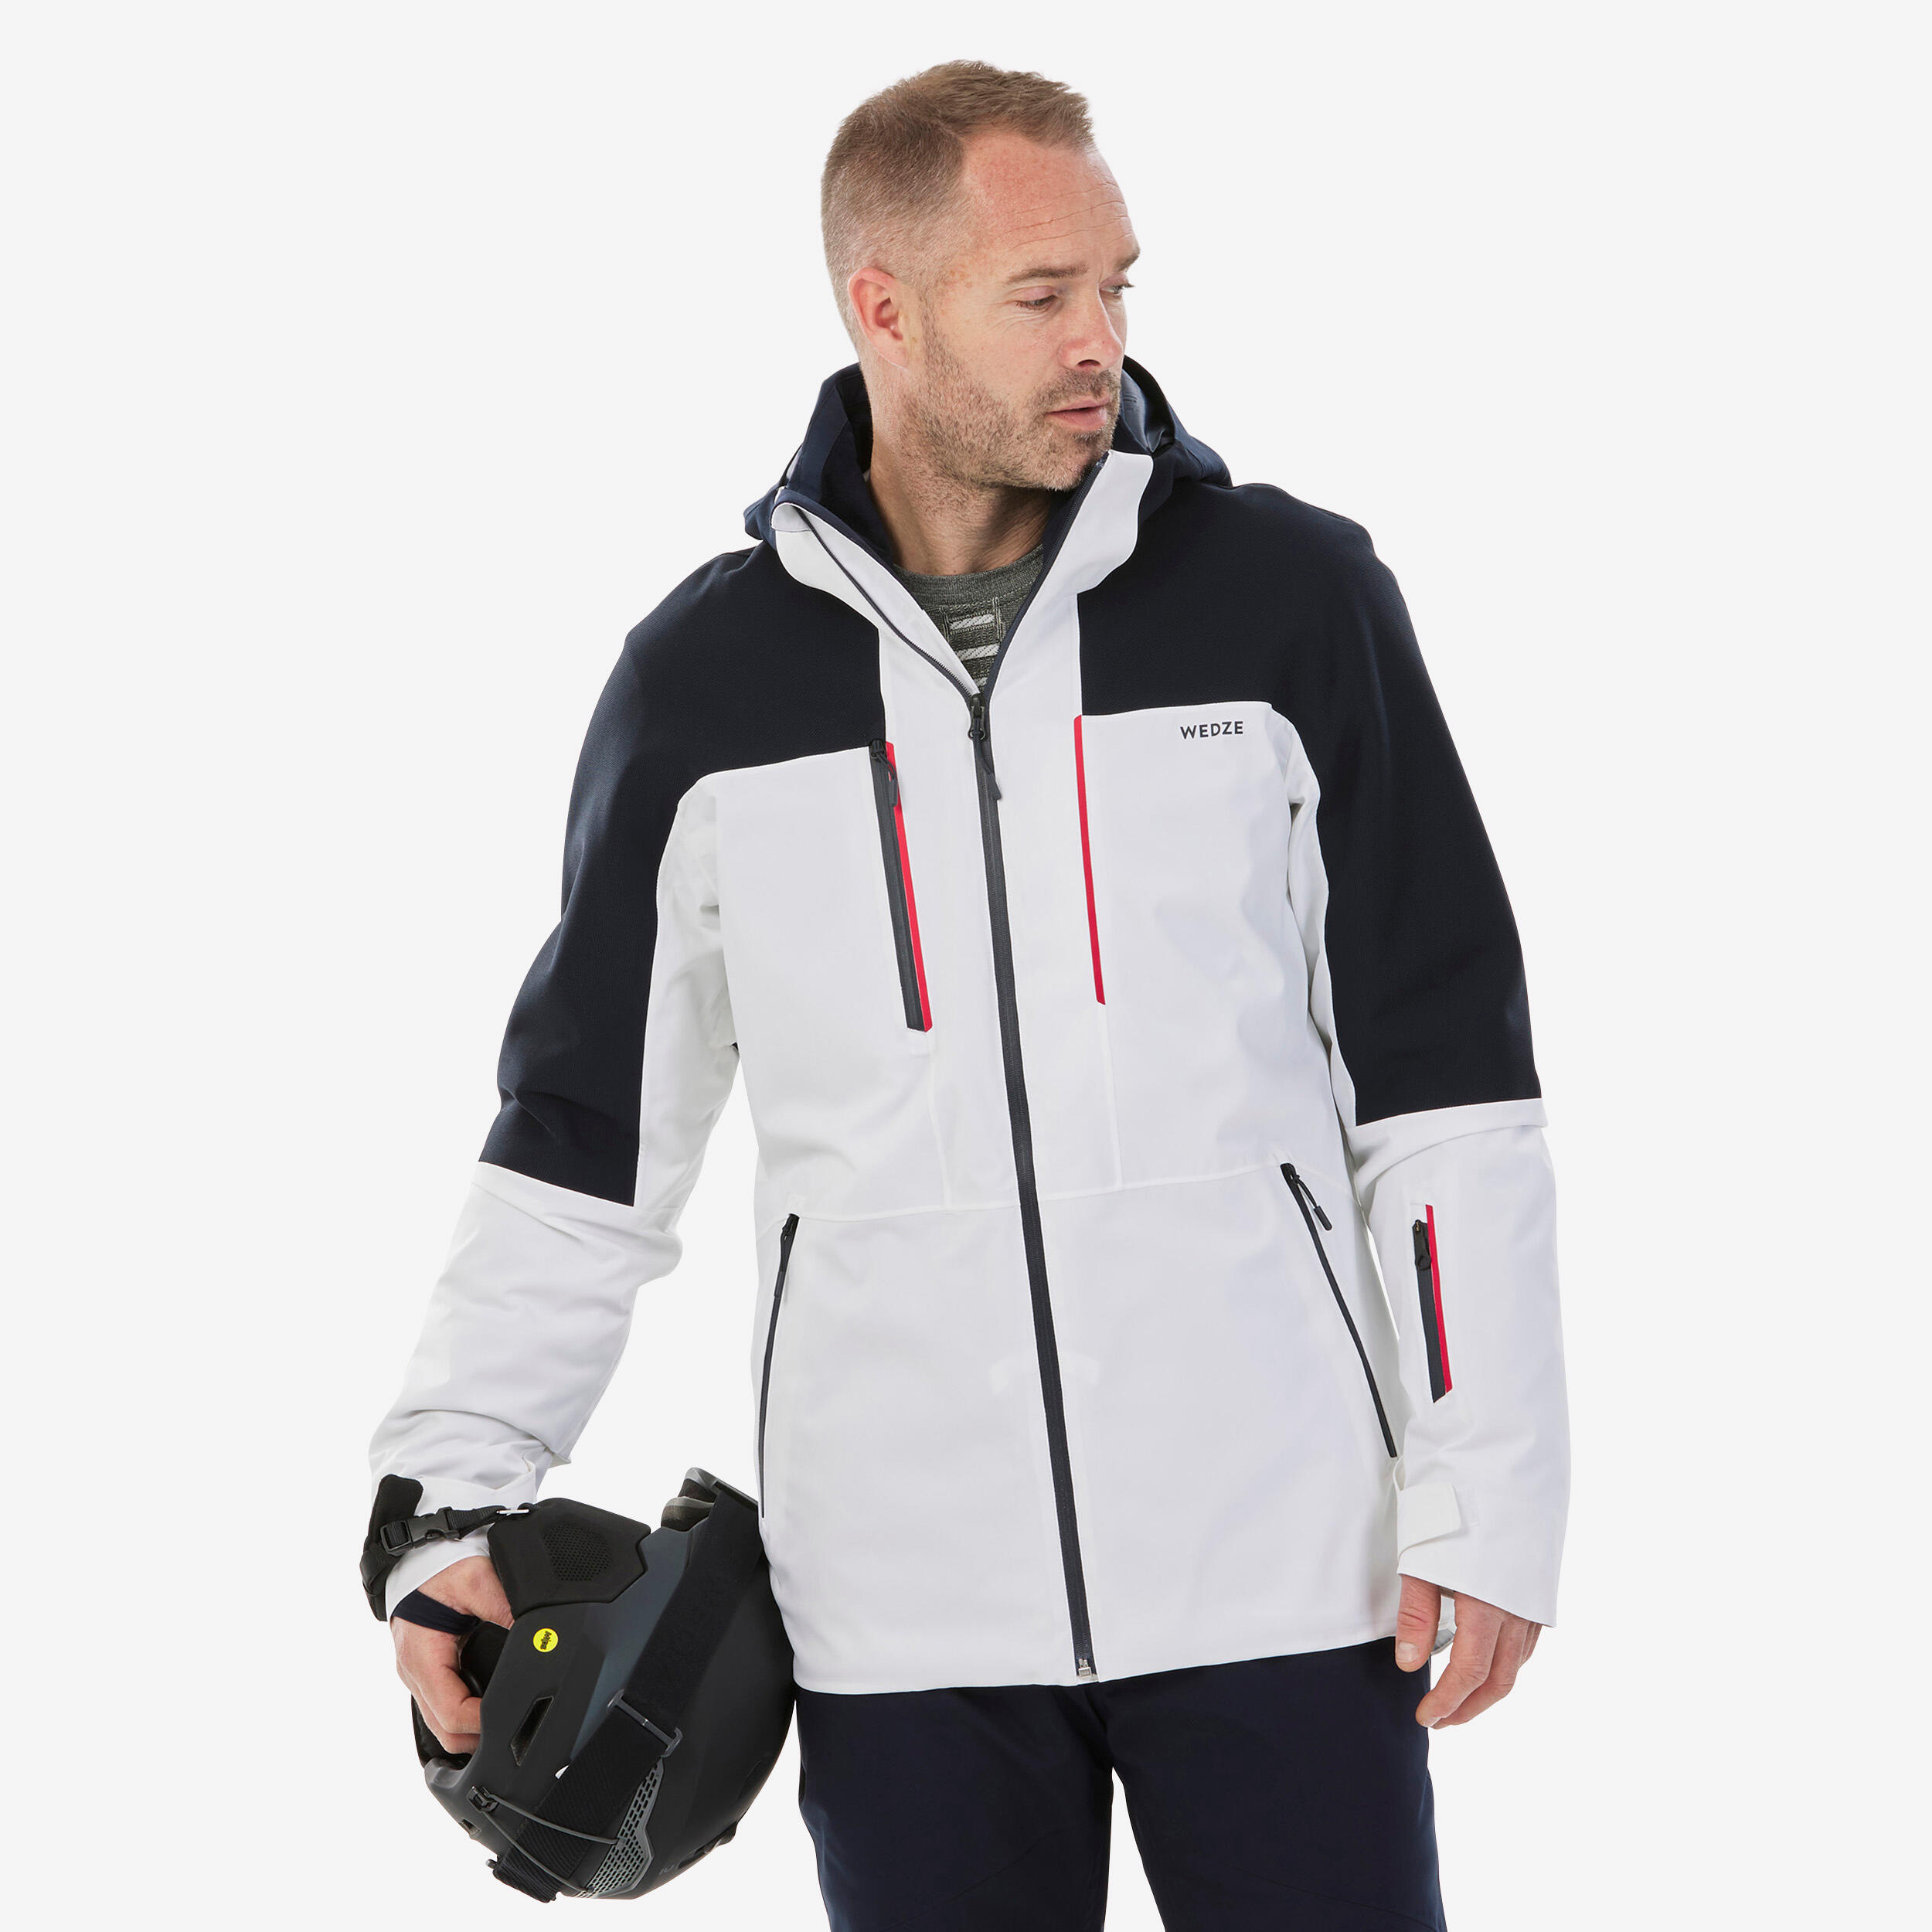 WEDZE Men's Ski Jacket - 500 SPORT - White/Navy